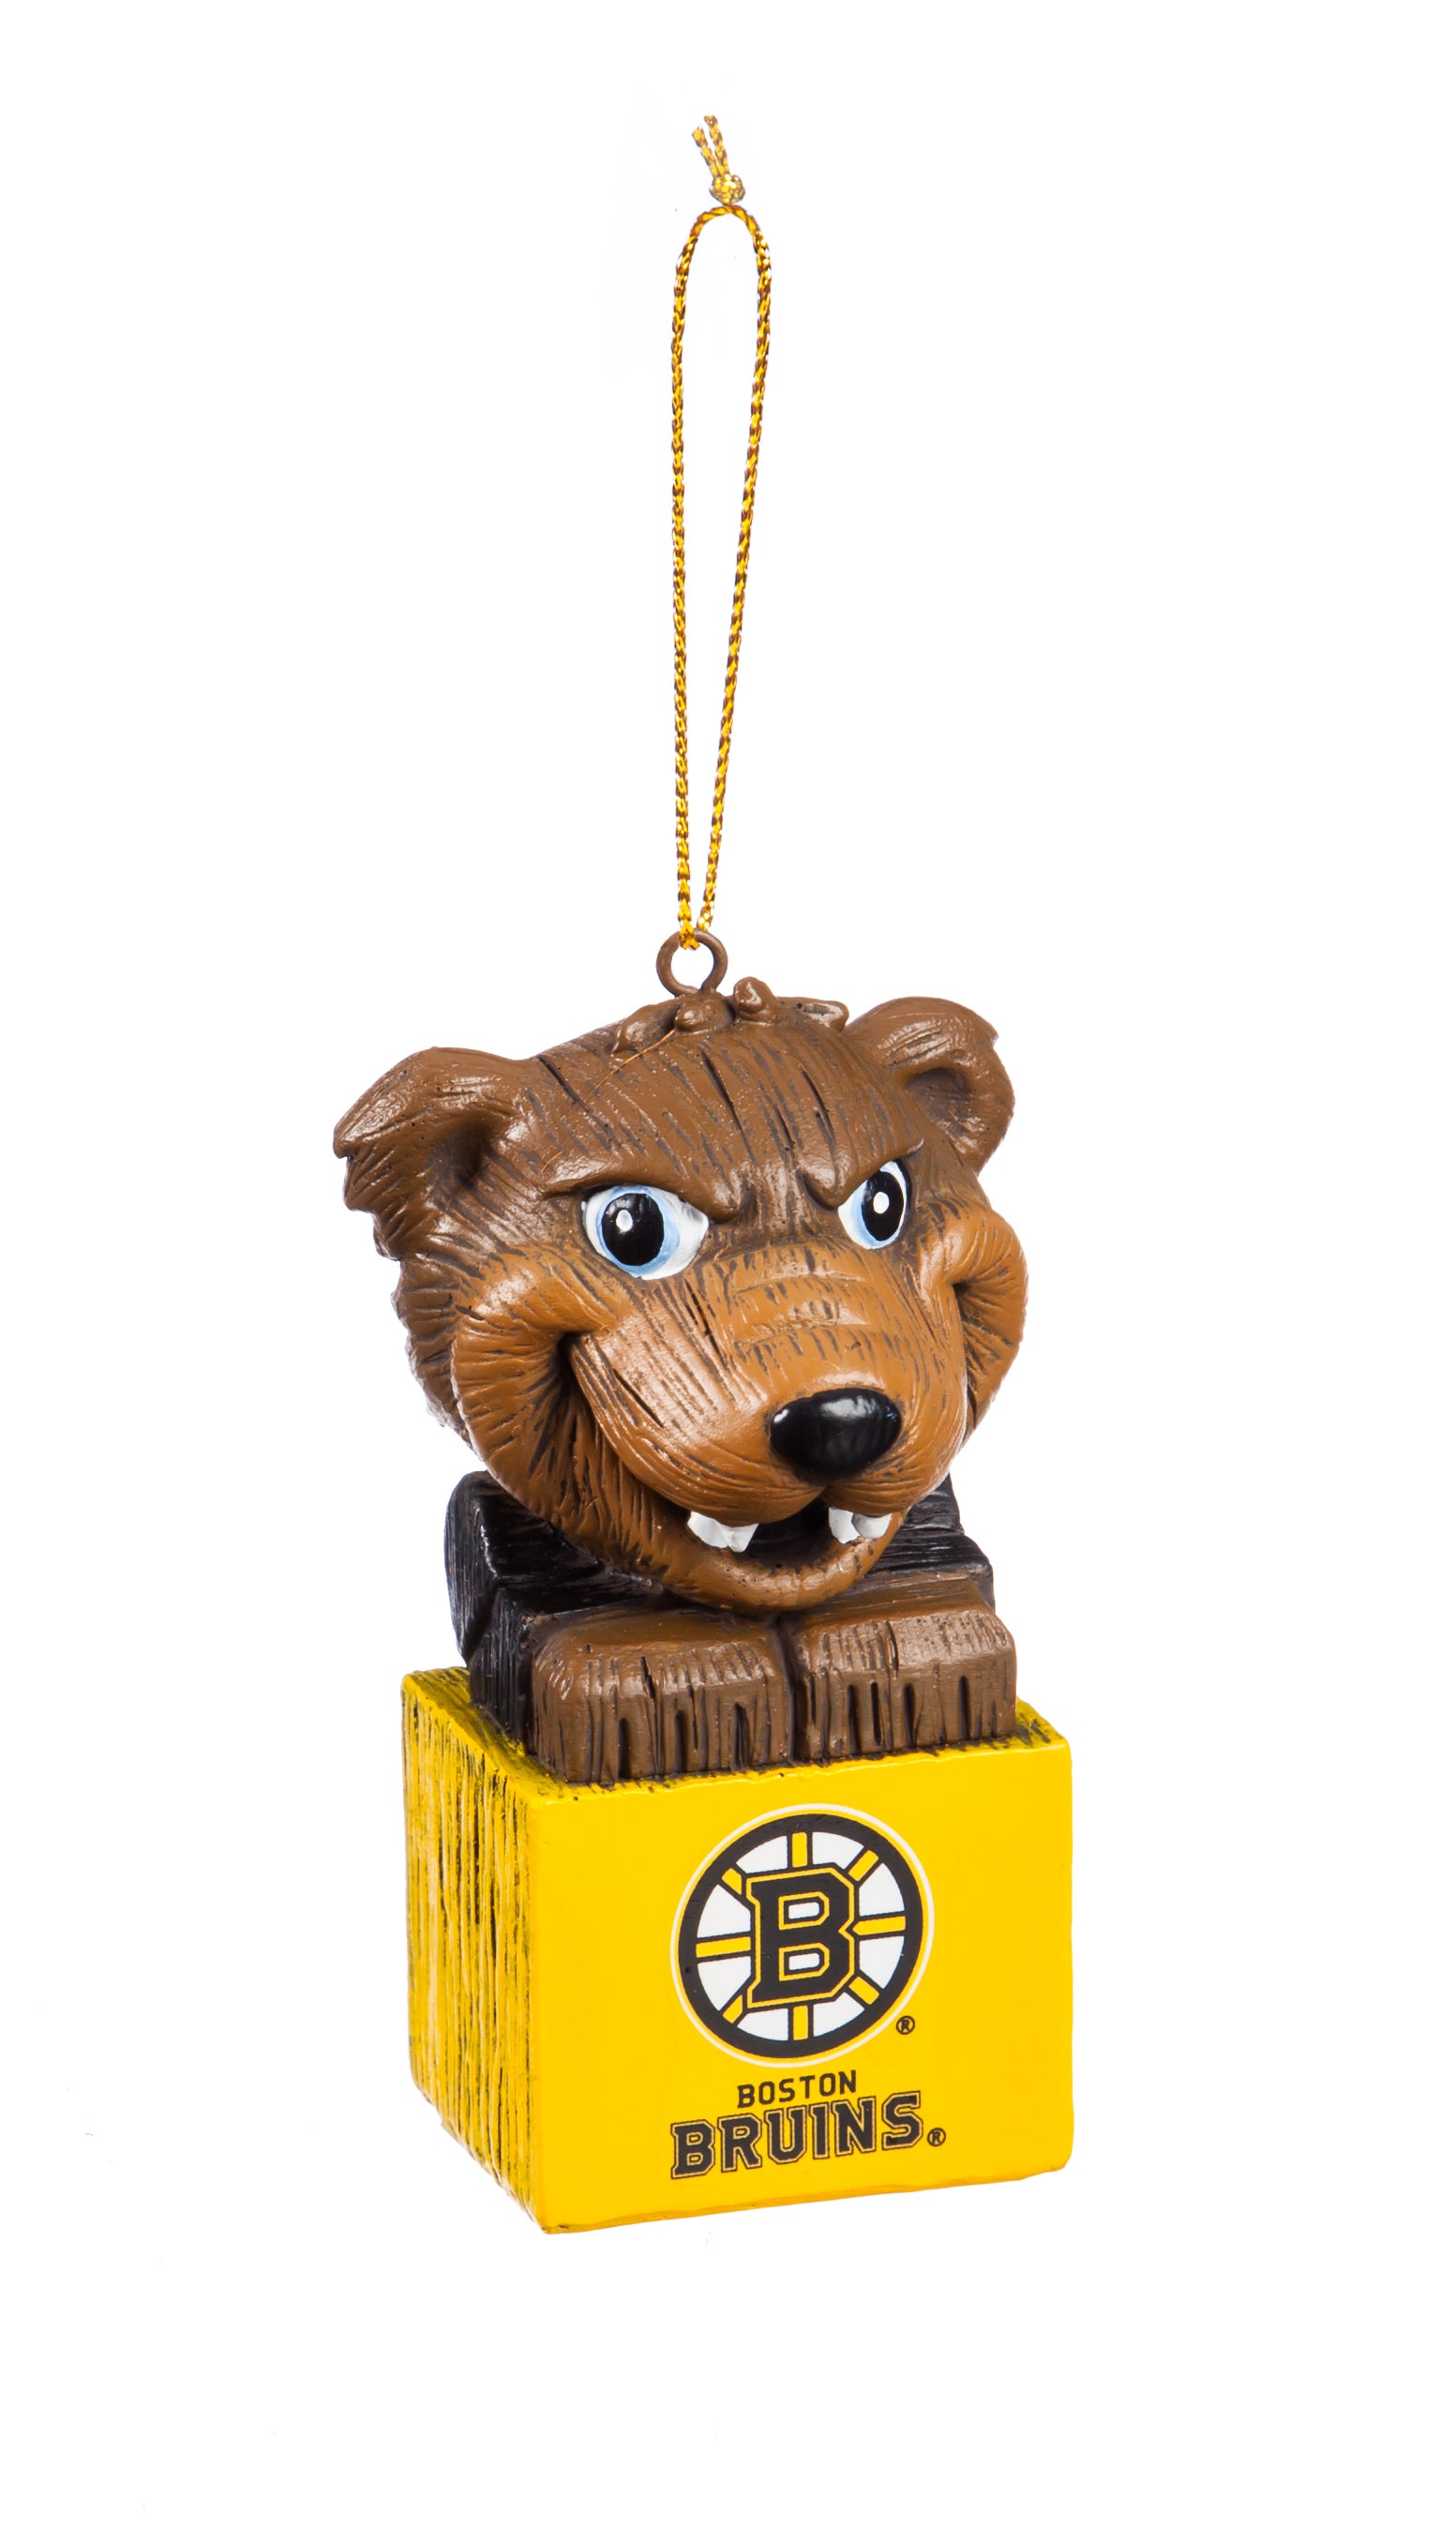 Boston Bruins Mascot Ornament